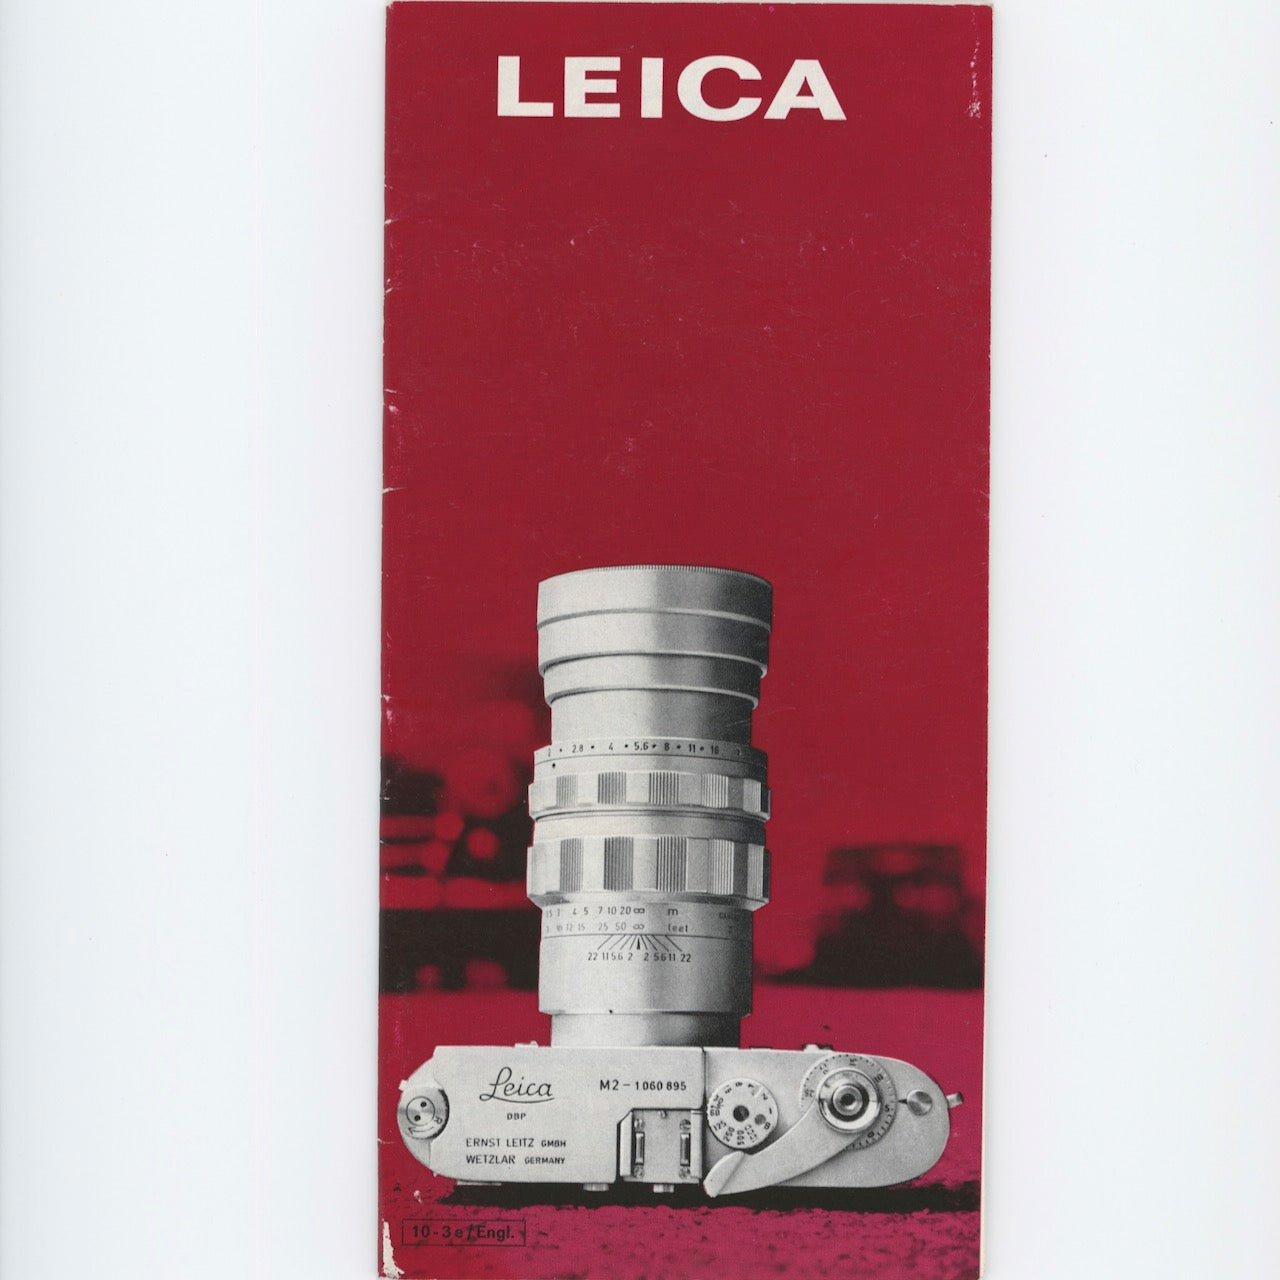 Leica Brochure 10-3e.